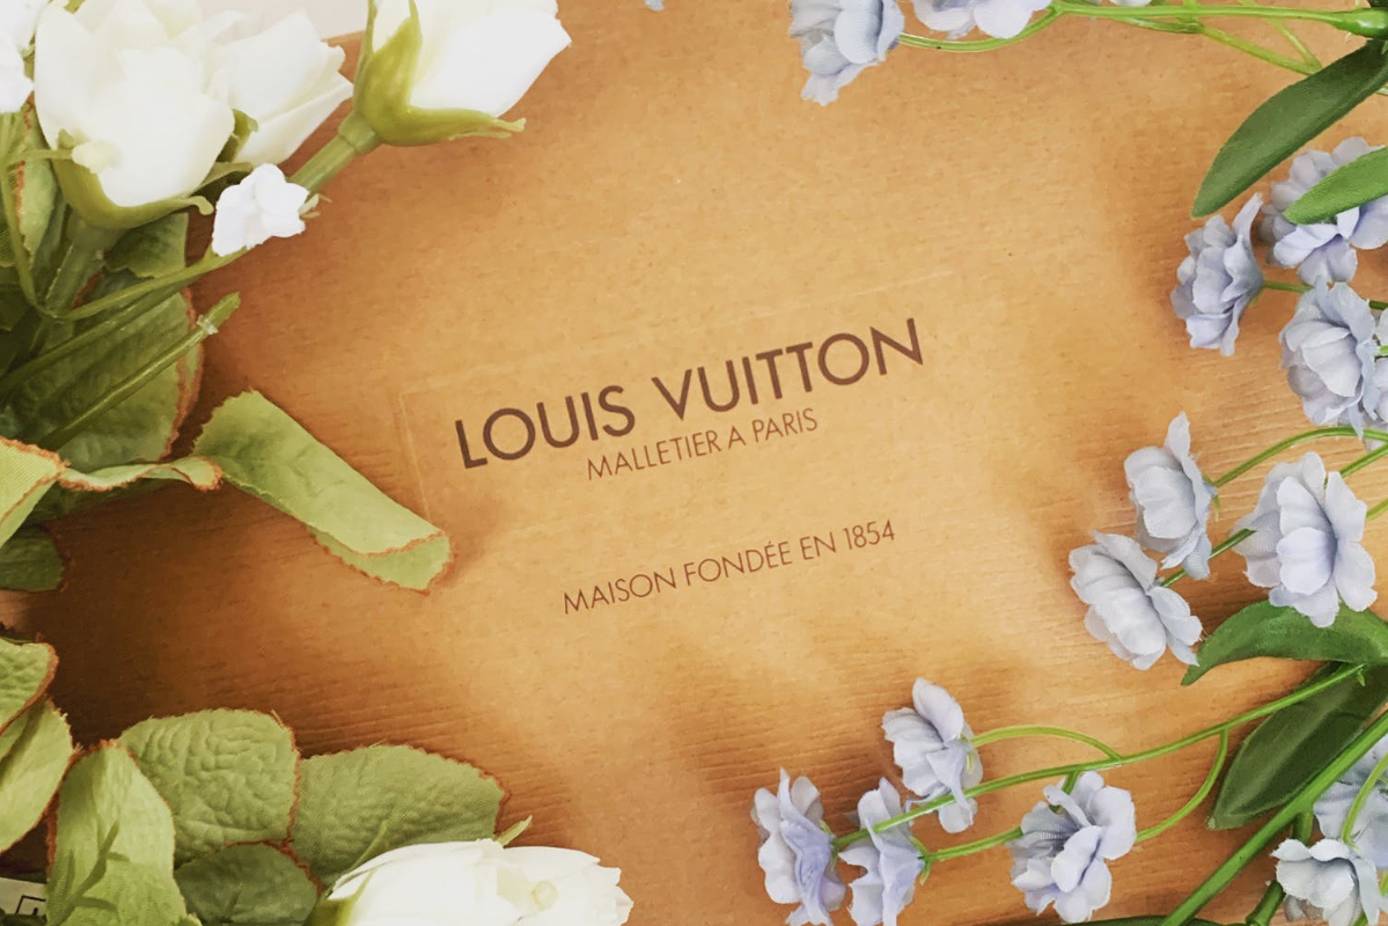 Louis Vuitton donó un millón de euros para los niños en Ucrania